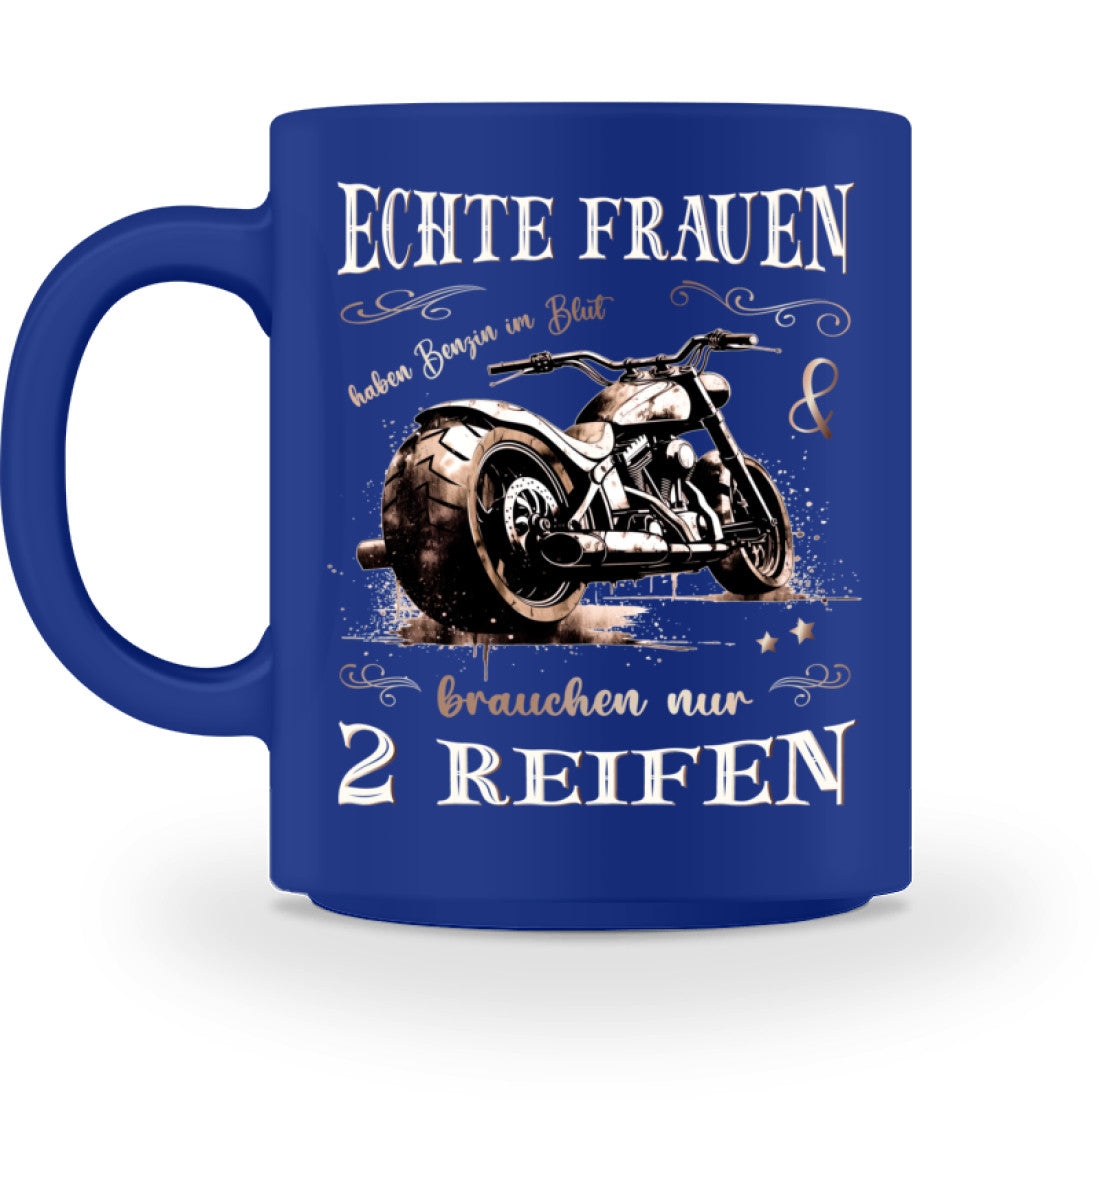 Eine Tasse für Motorradfahrerinnen von Wingbikers, mit dem beidseitigen Aufdruck, Echte Frauen brauchen nur zwei Räder, in royal blau.